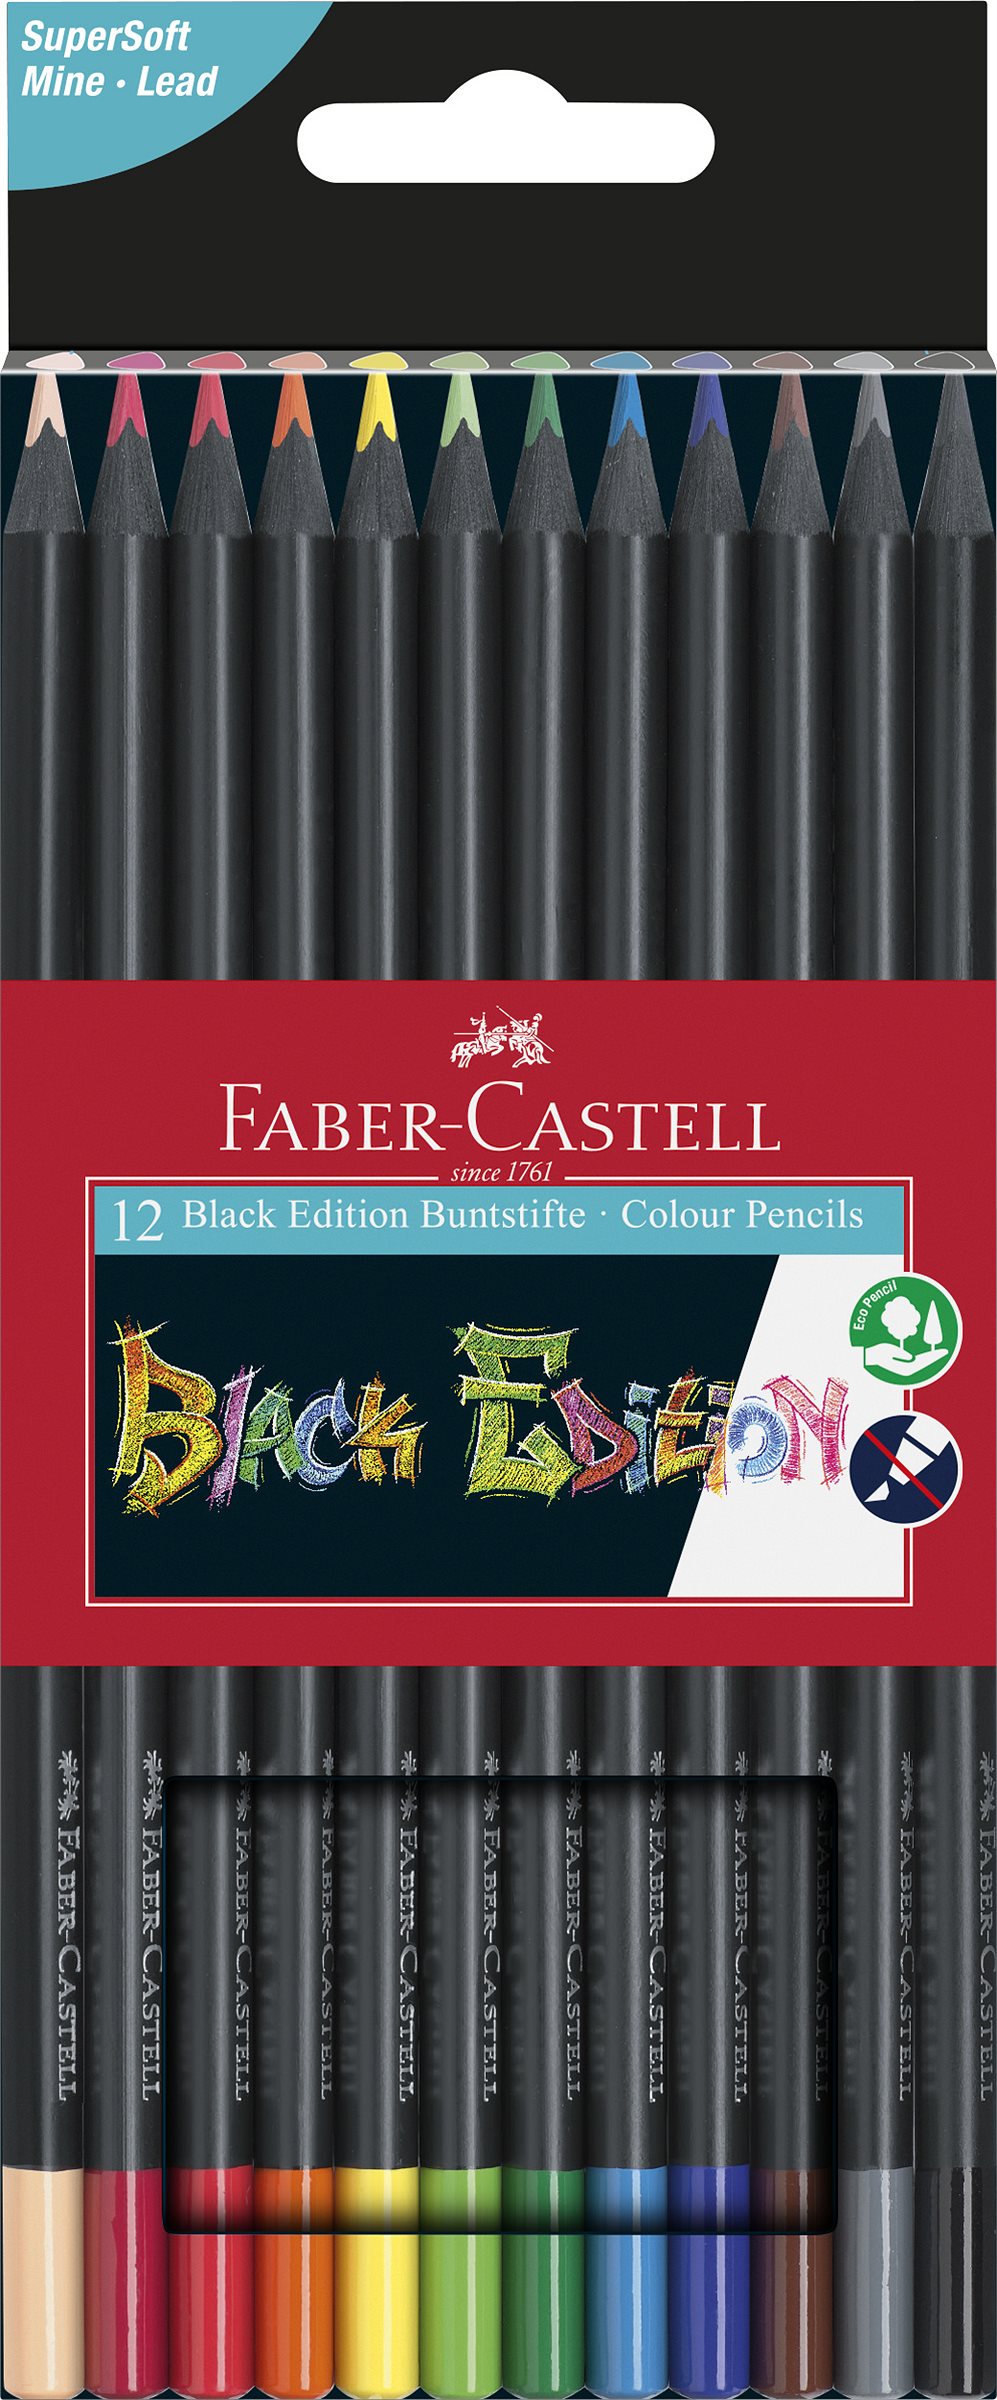 Faber-Castell_Black Edition Buntstifte_Set aus 12_6,00 EUR